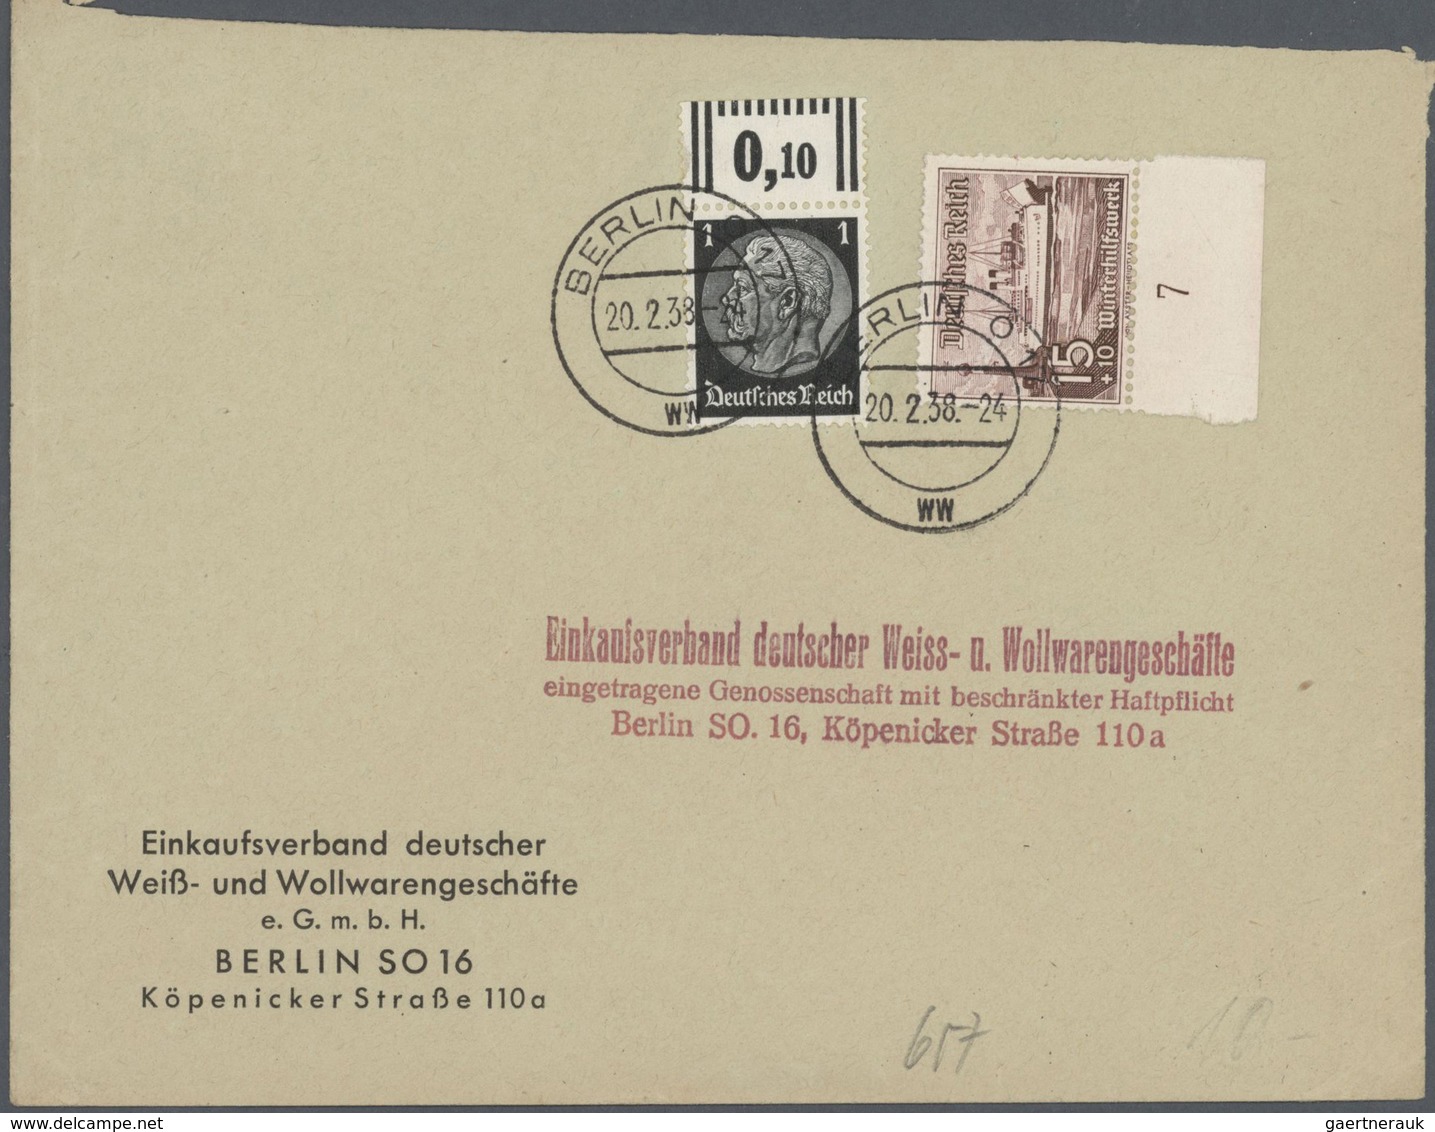 Alle Welt: 1860/1980, umfangreicher Briefpostan aus Auflösung beginnend mit einem Paketbegleitbrief